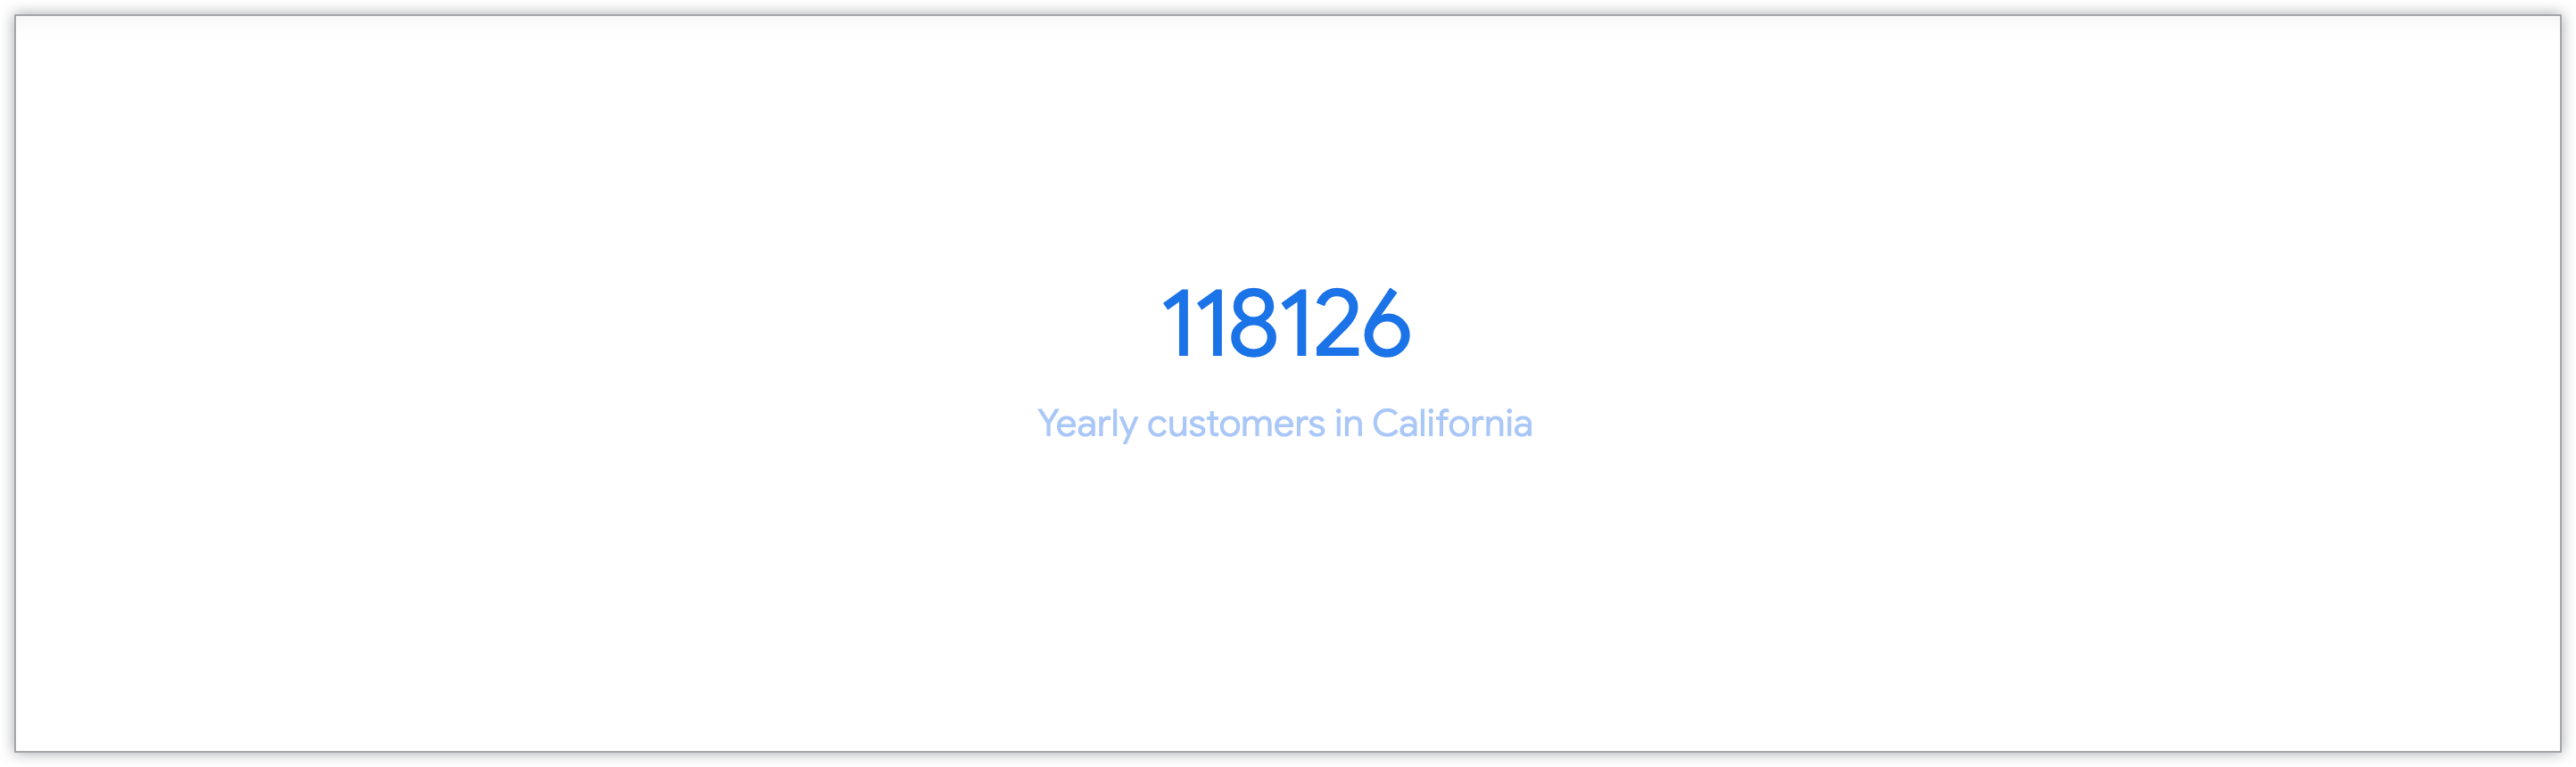 显示来自加利福尼亚州的年度客户数量的单值图表。